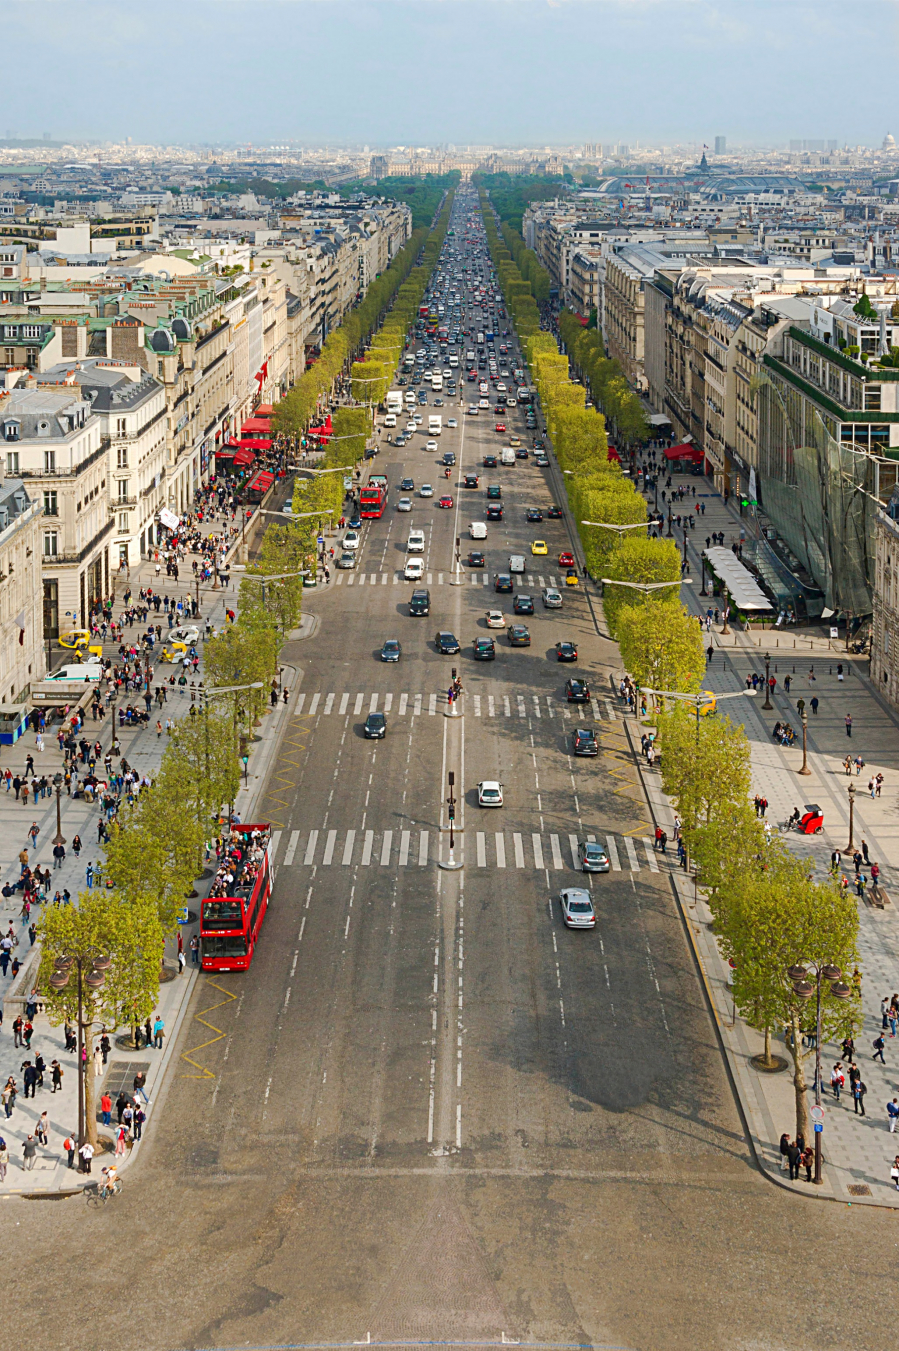 Dáng dấp hiện đại của đại lộ Champs-Elysées có được là nhờ công quy hoạch của kiến trúc sư Hittorff vào những năm 1836-1840